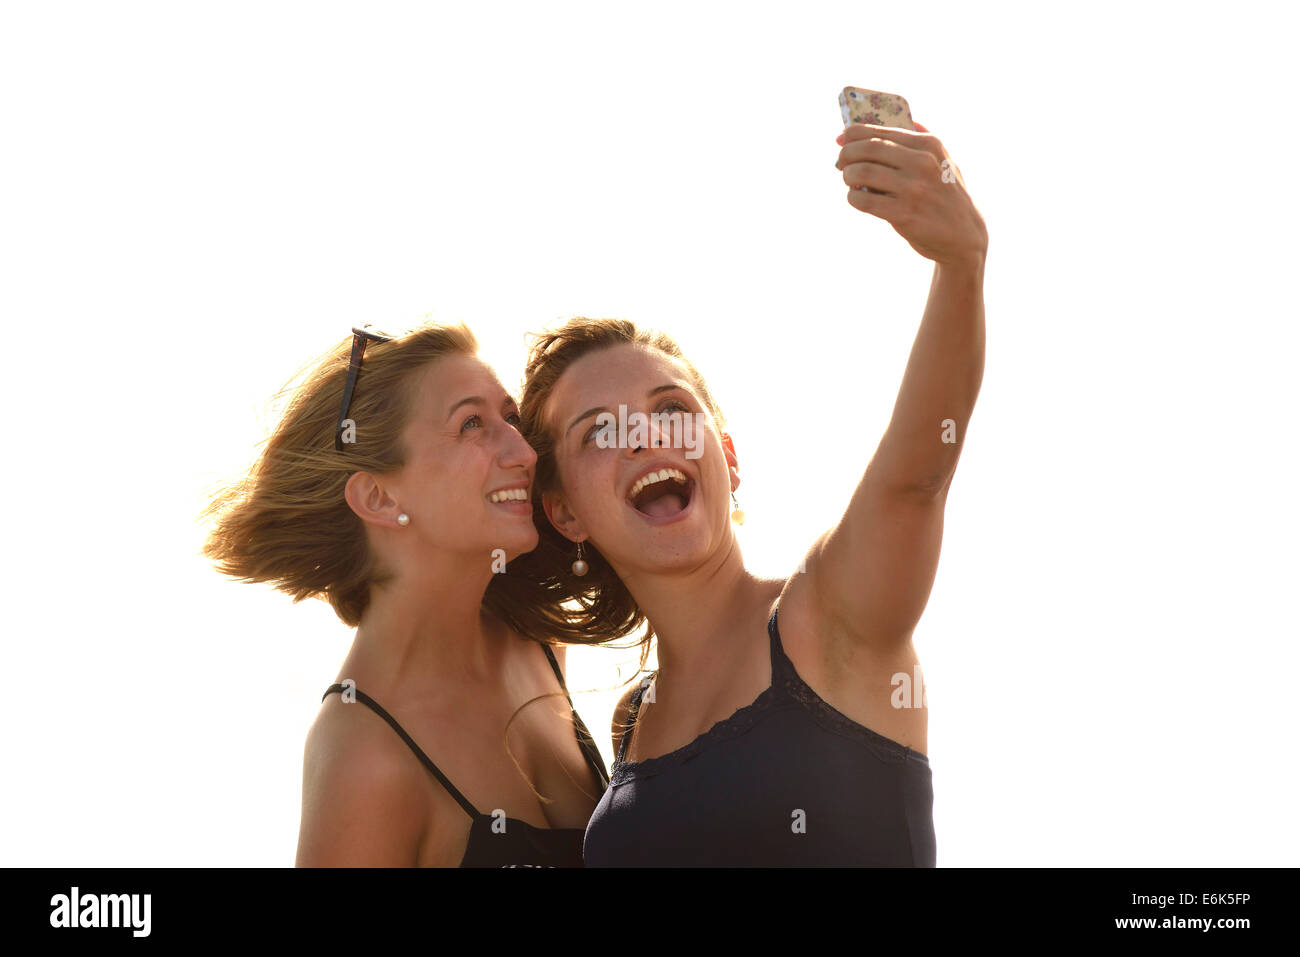 Deux jeunes femmes selfies, prendre un autoportrait avec un téléphone mobile, Lanzarote, îles Canaries, Espagne Banque D'Images